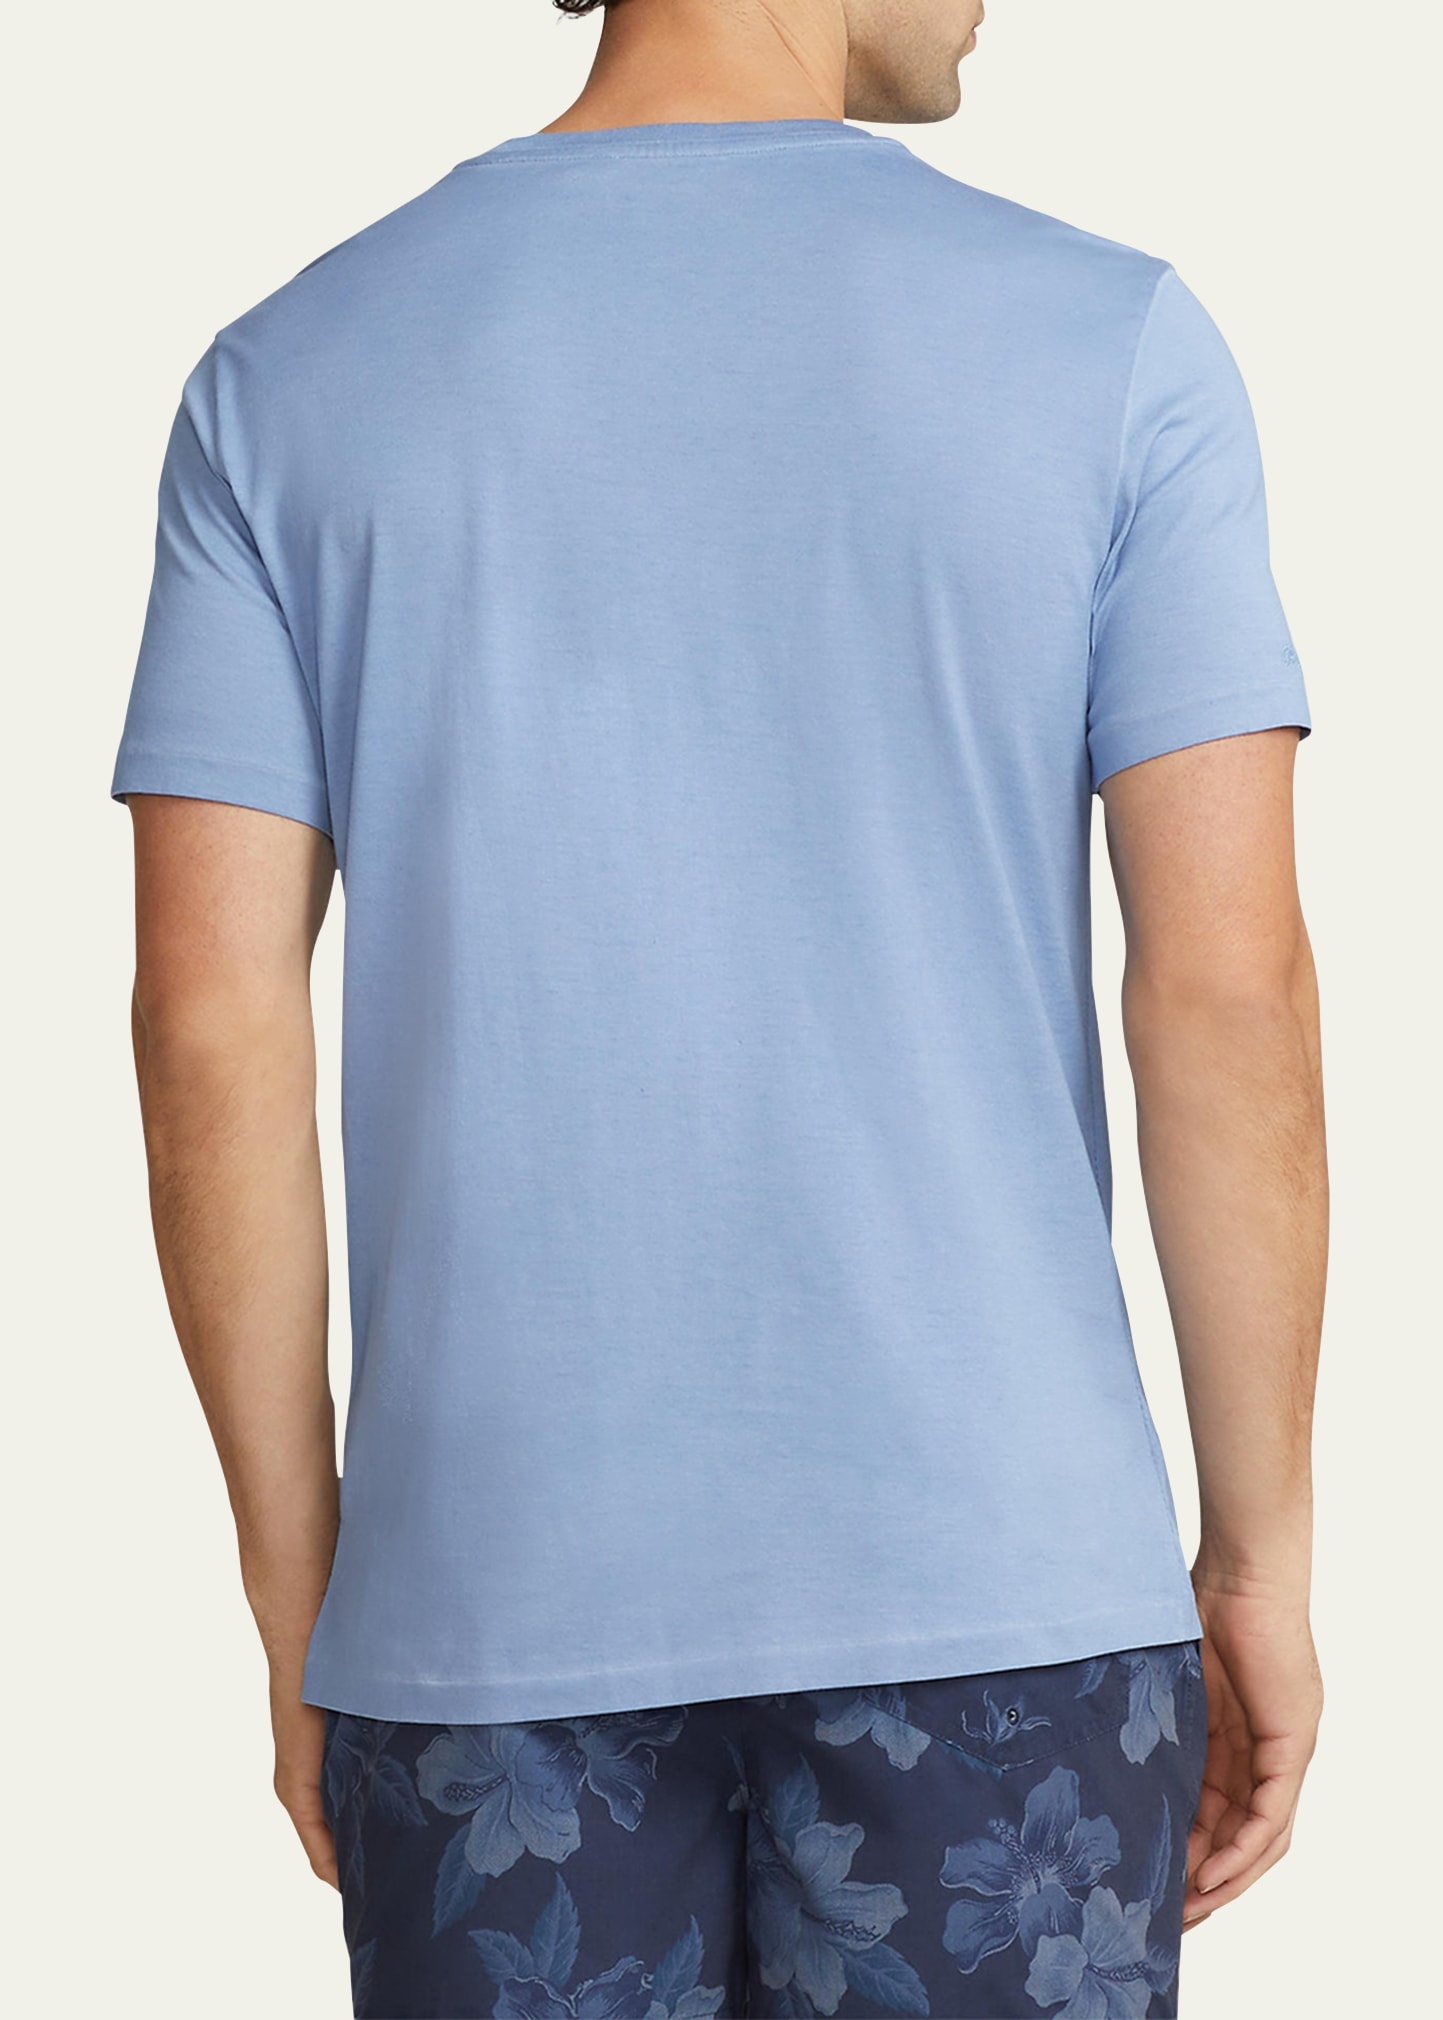 Men's Garment-Dyed Jersey T-Shirt - 3